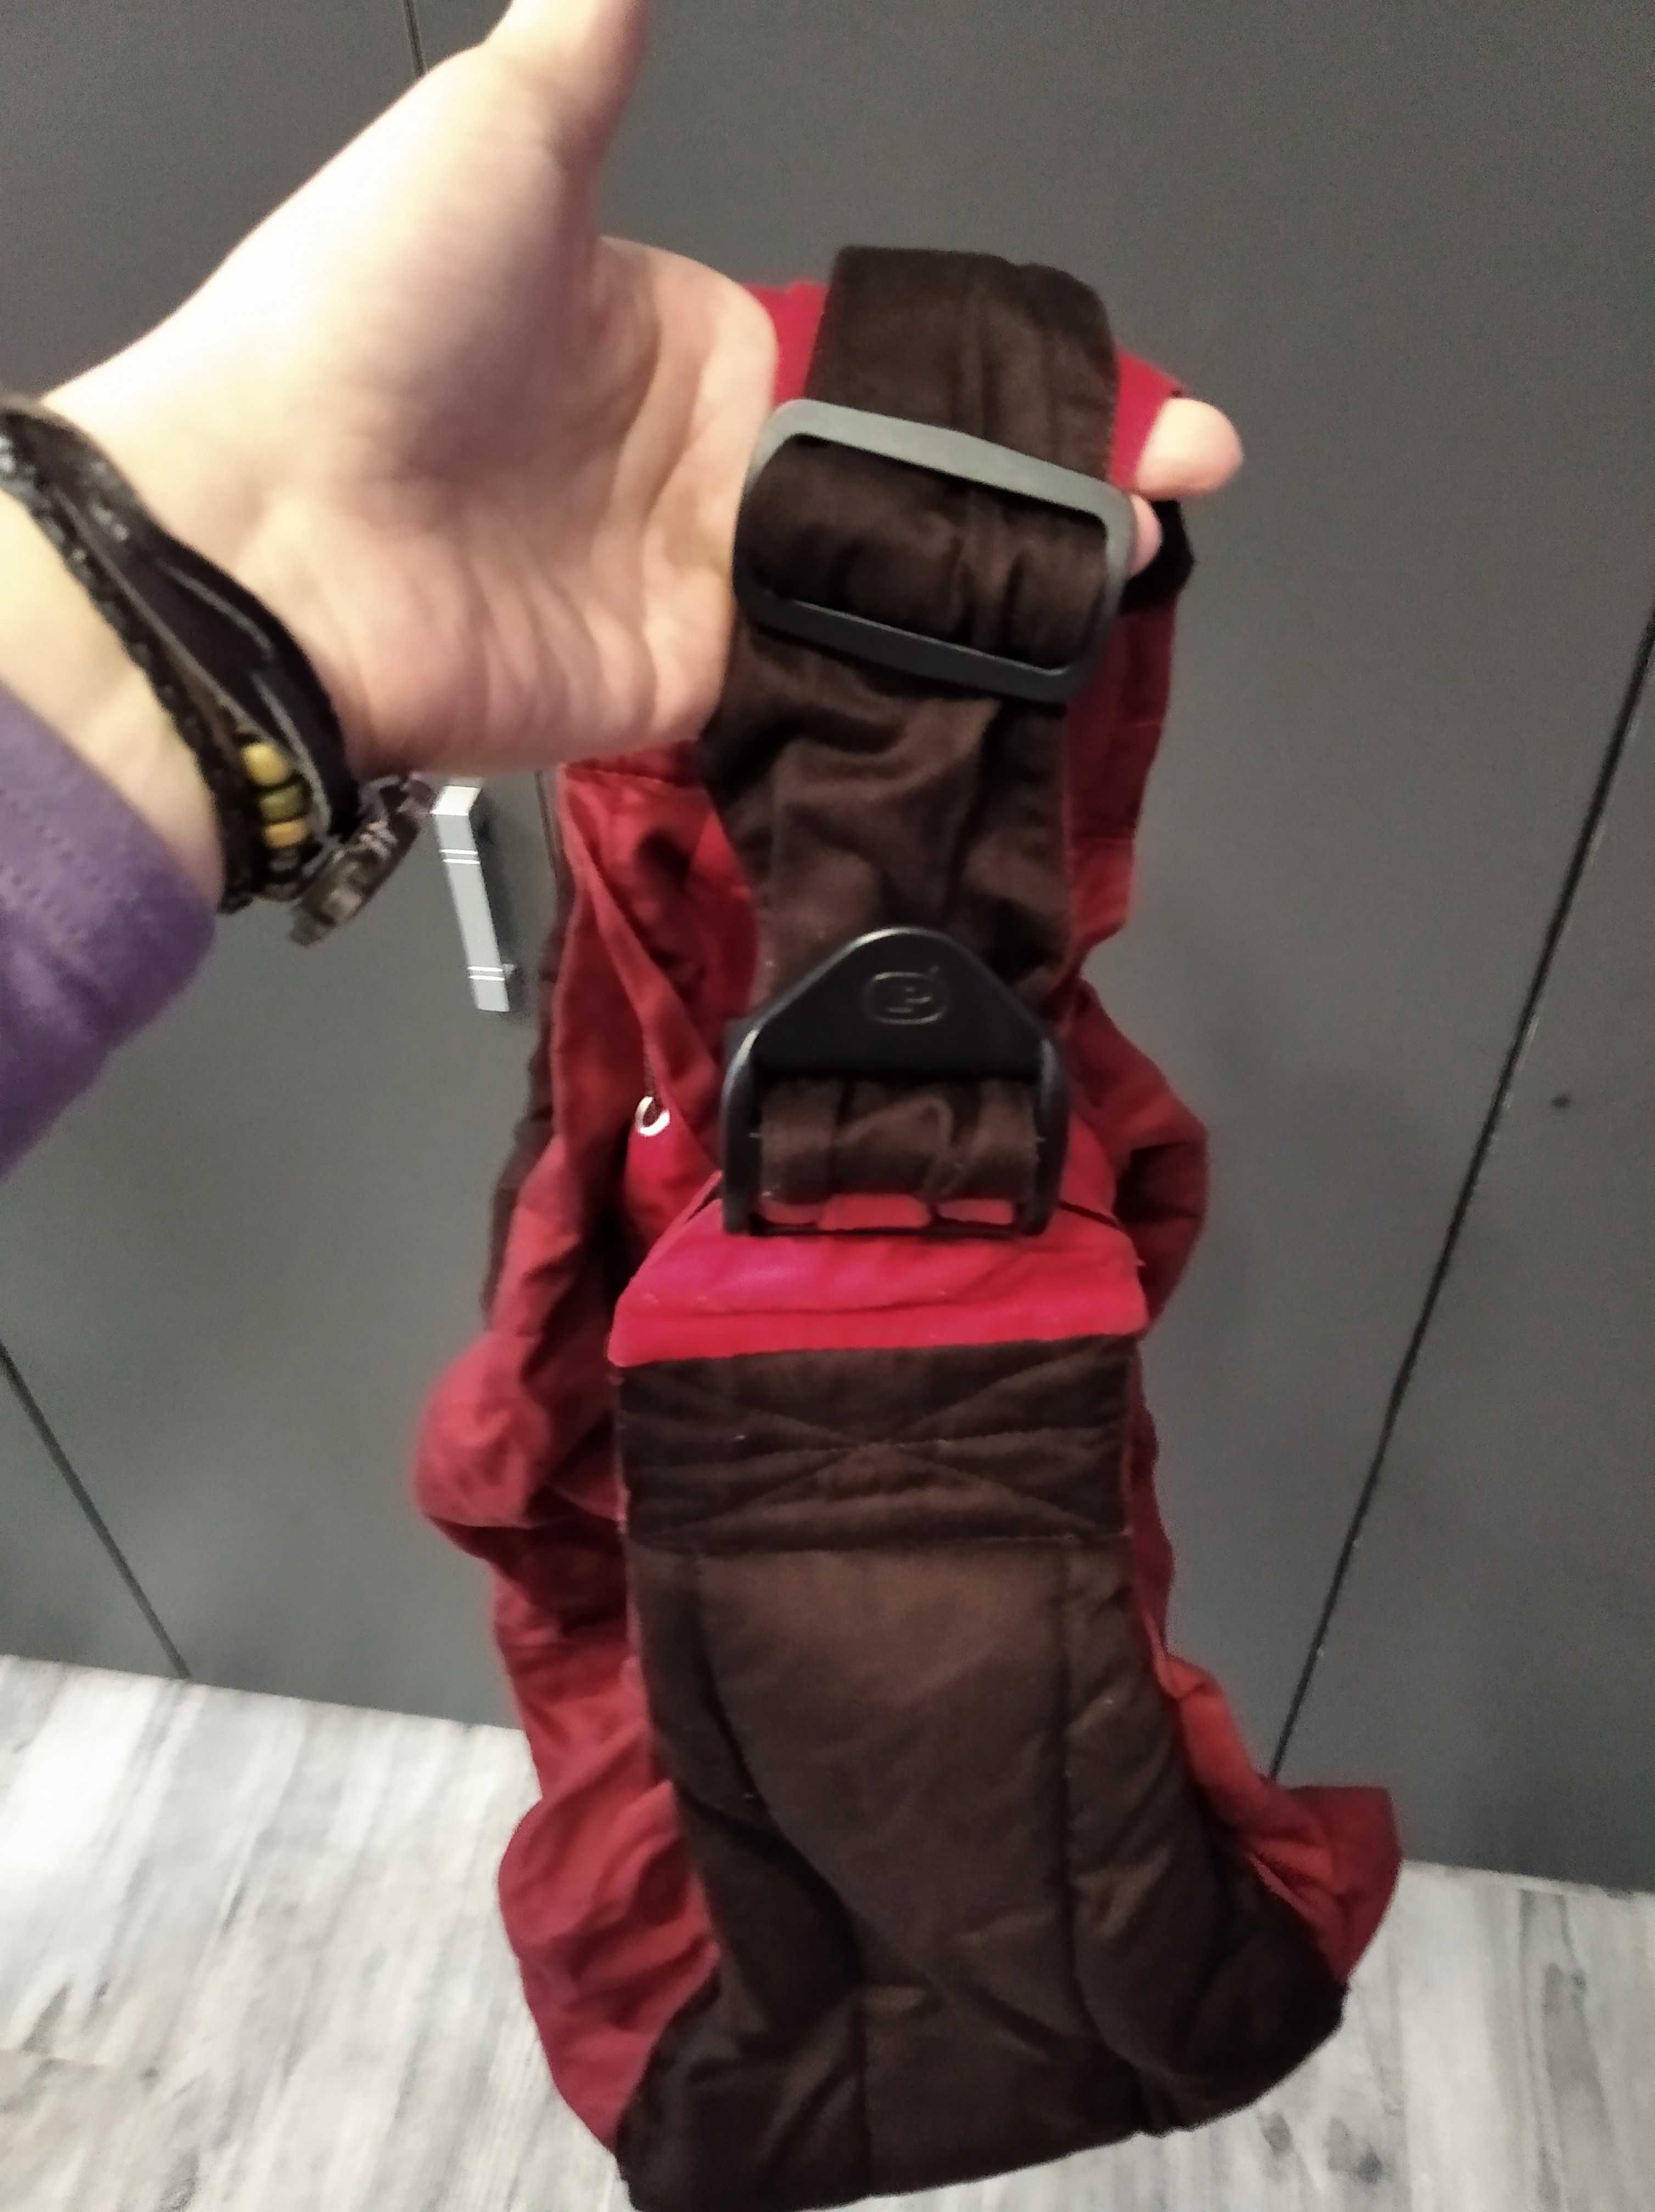 Nosidełko/chusta baby-bag firmy Premaxx z instrukcją